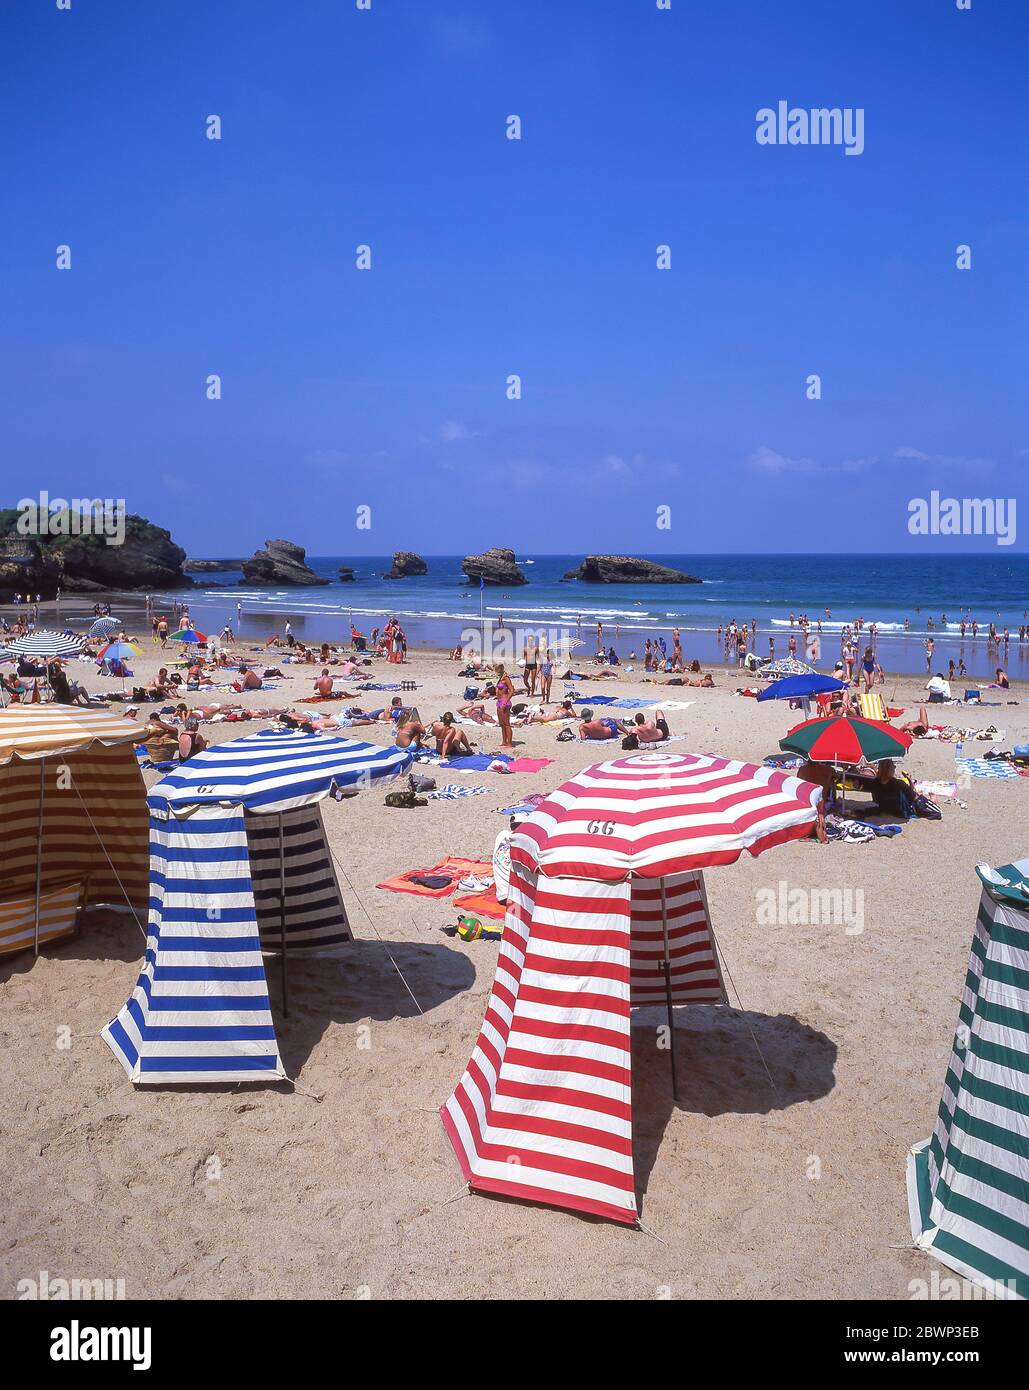 Vintage beach changing tents on Plage Miramar, Biarritz (Miarritze), Pyrénées-Atlantiques, Nouvelle-Aquitaine, France Stock Photo